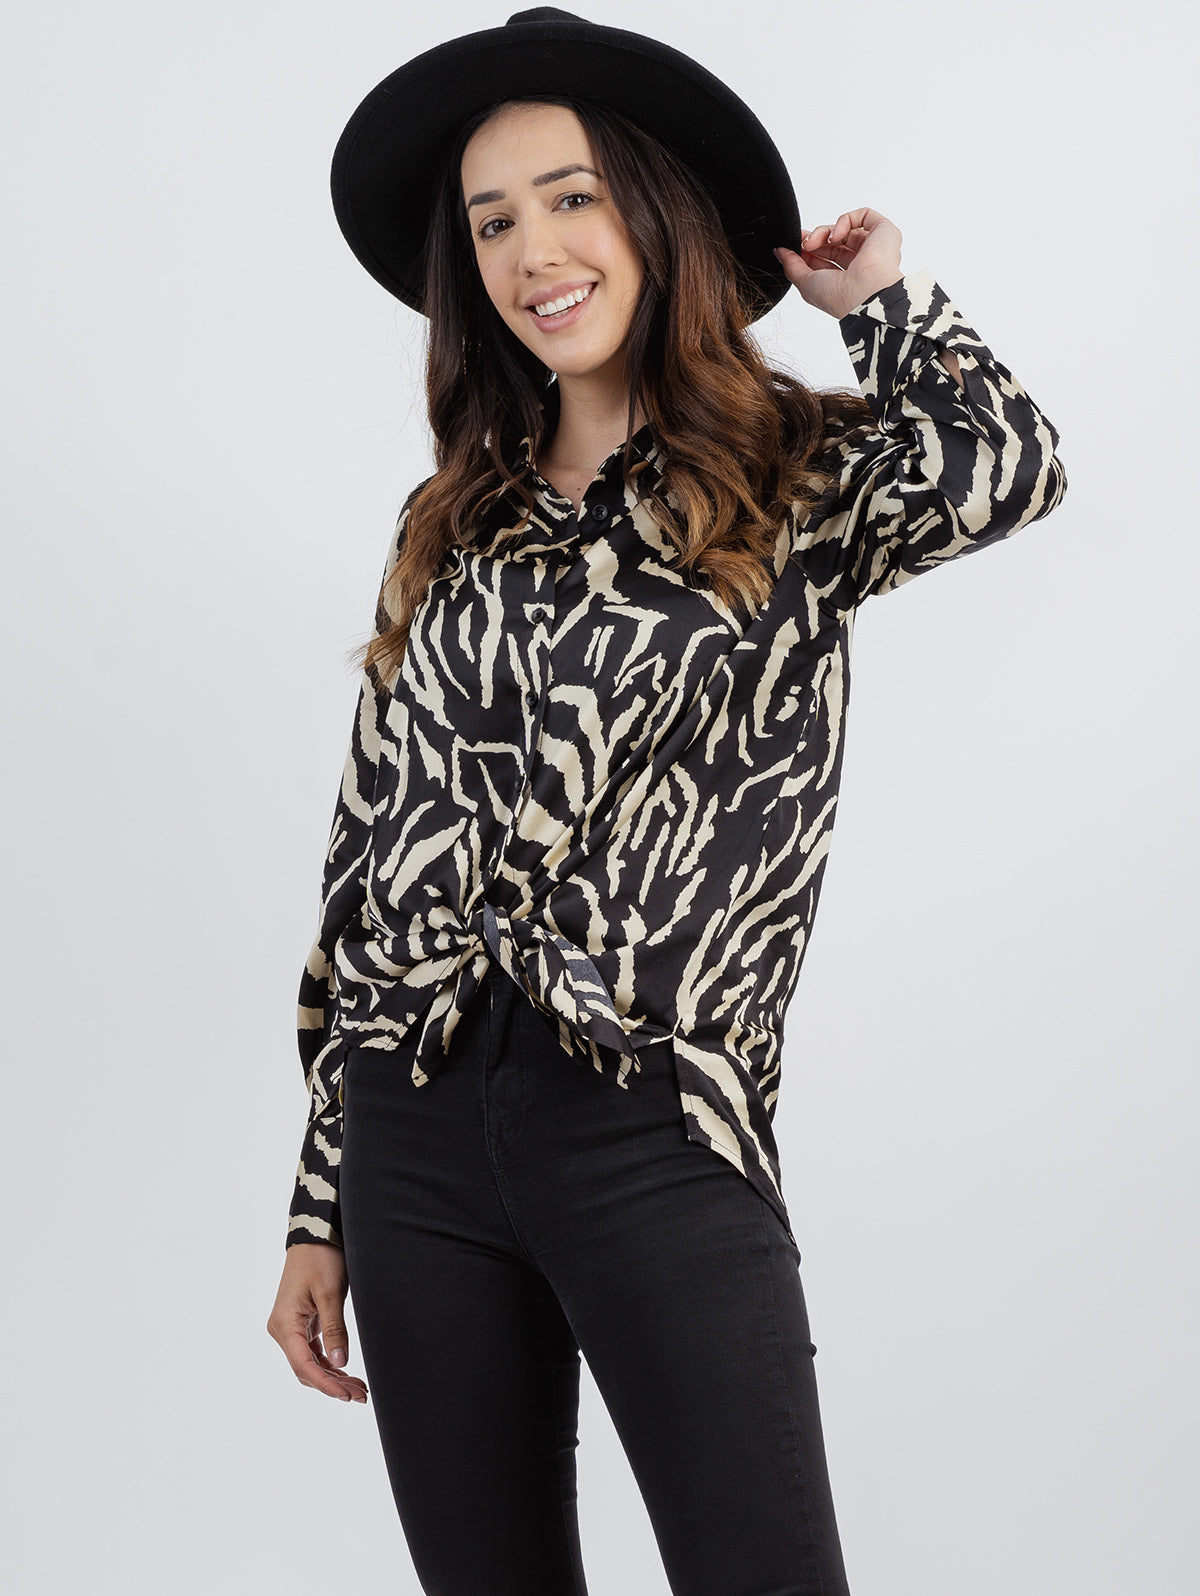 American Bling Women Leopard Print Long Sleeve Shirt - Montana West World